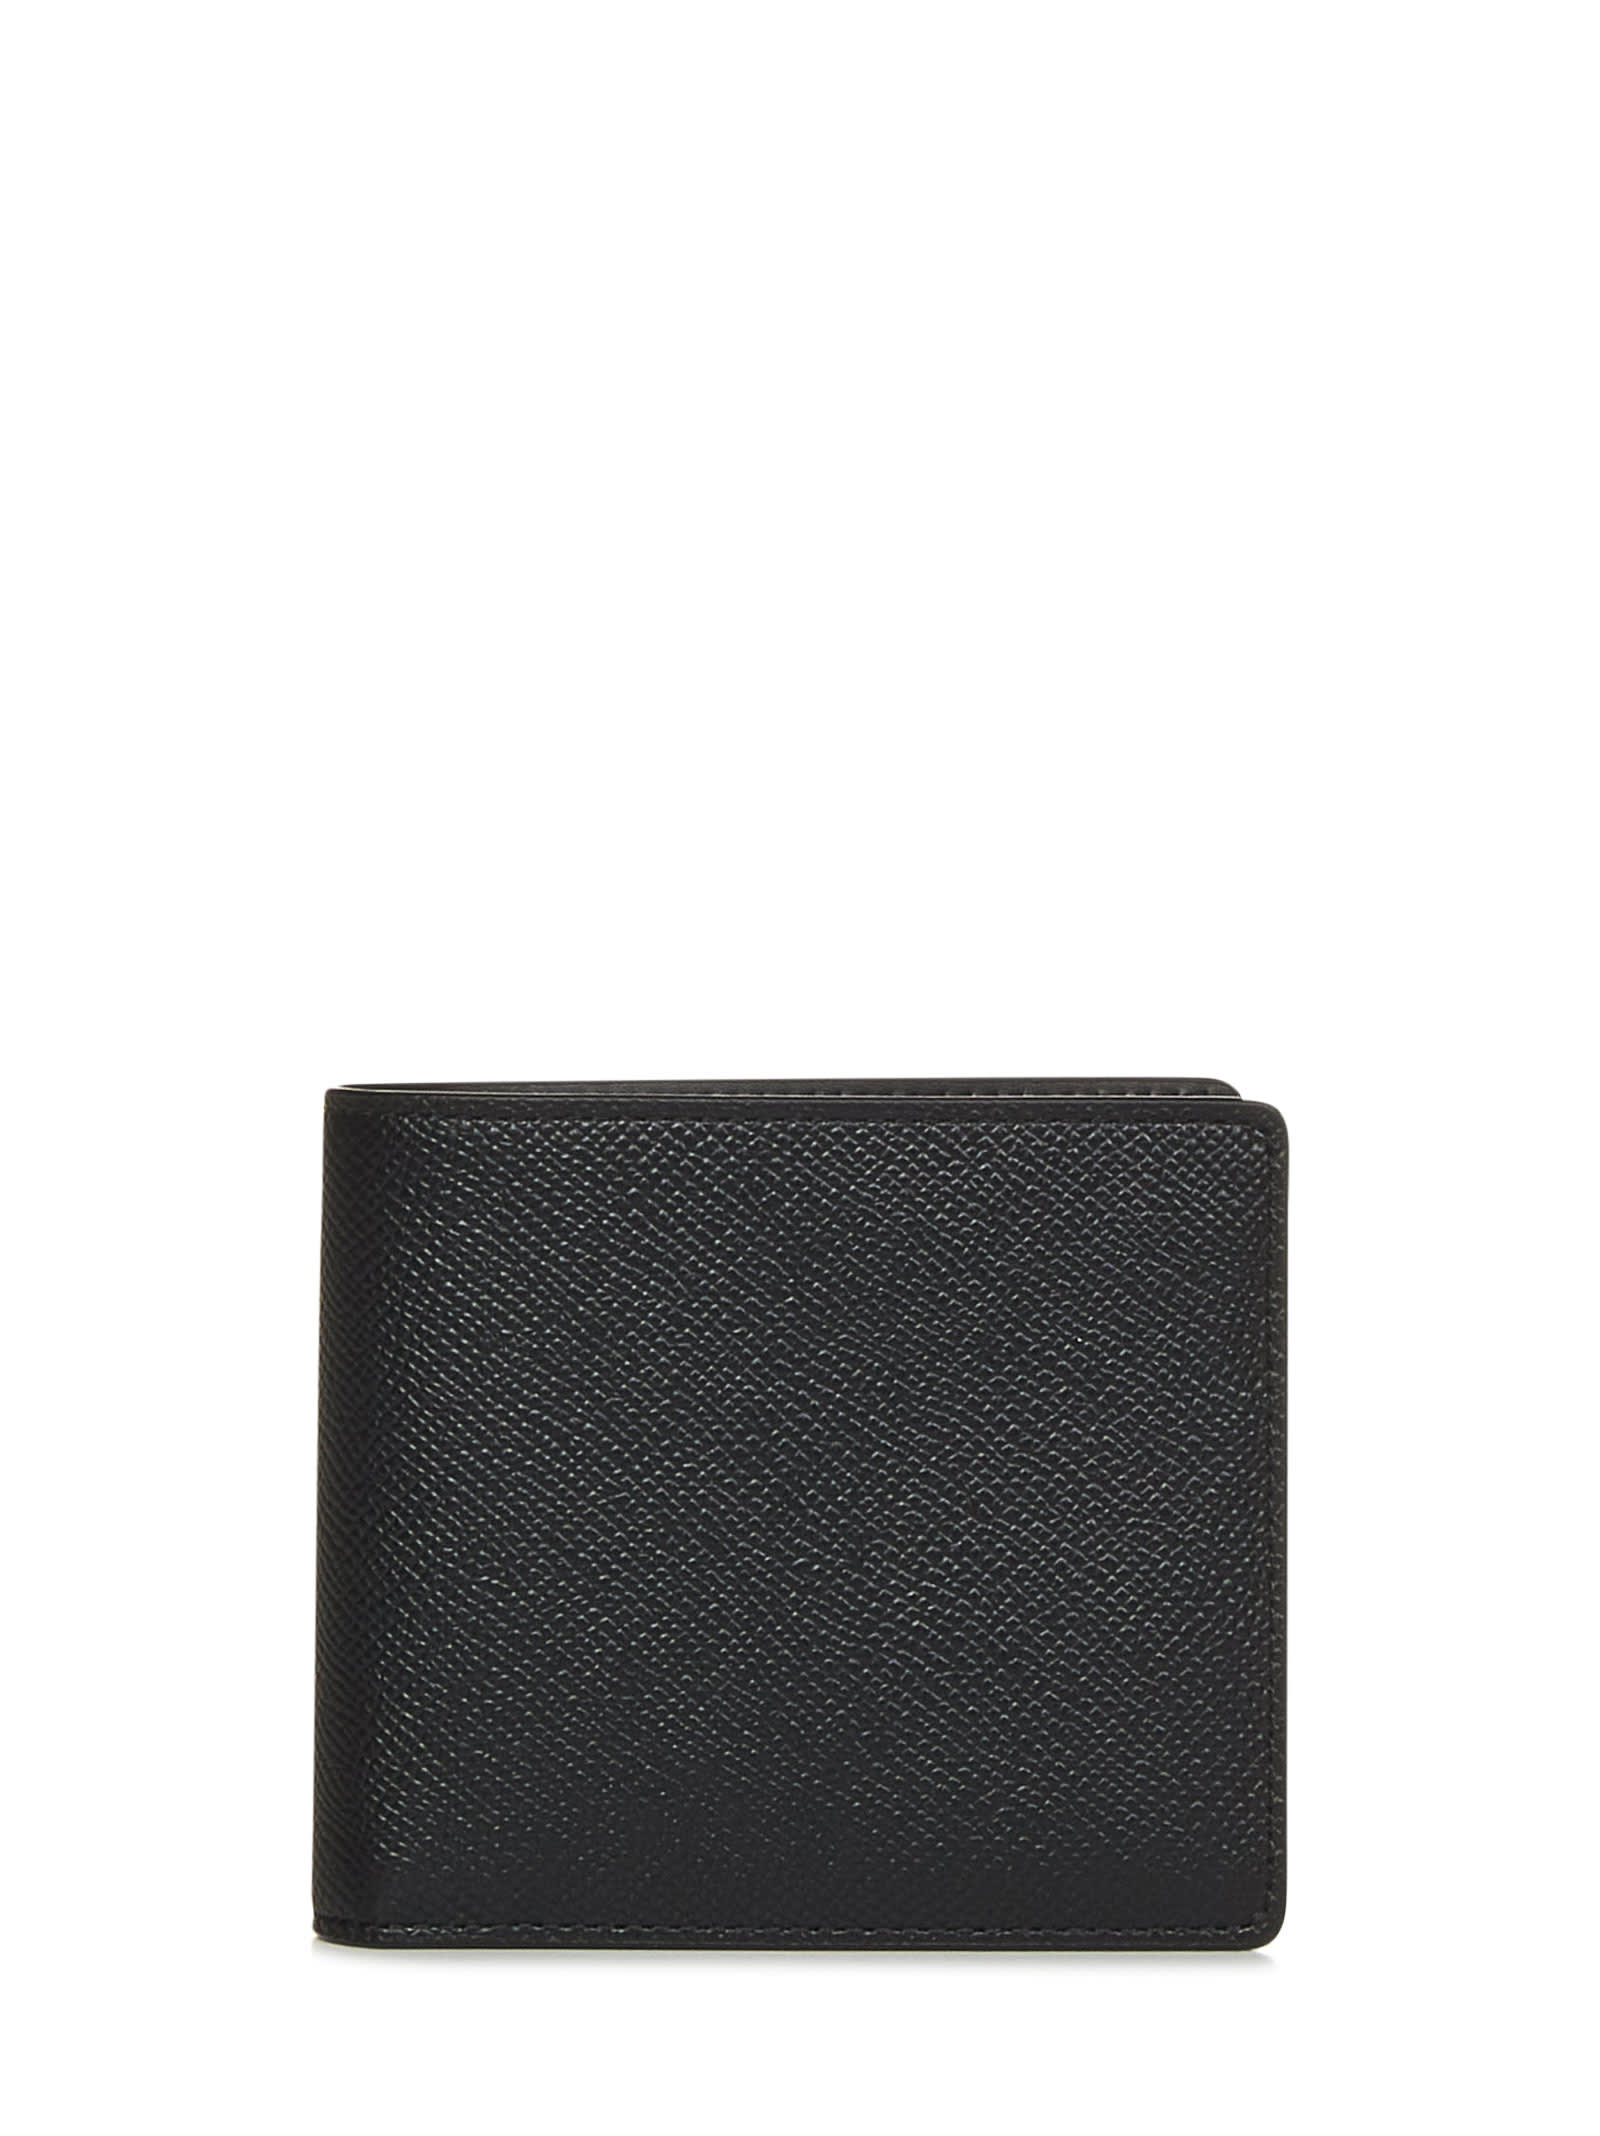 Maison Margiela Four Stitches Wallet In Black | ModeSens